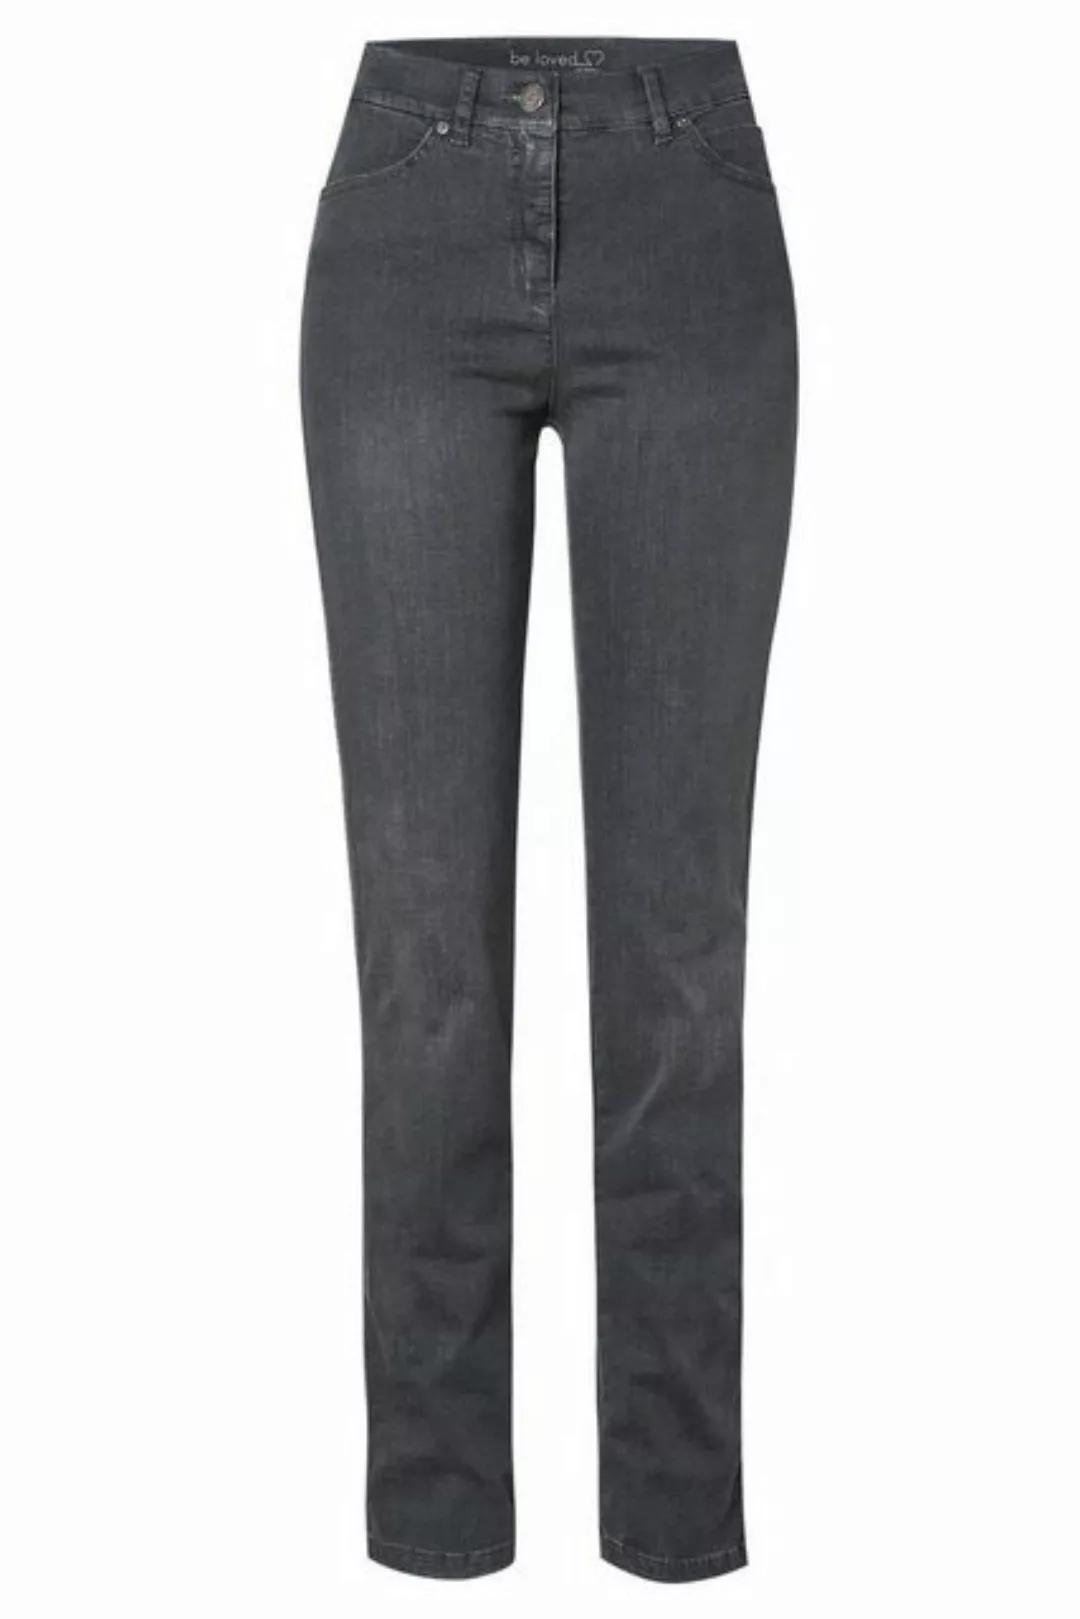 TONI 5-Pocket-Jeans in Form "be loved CS günstig online kaufen